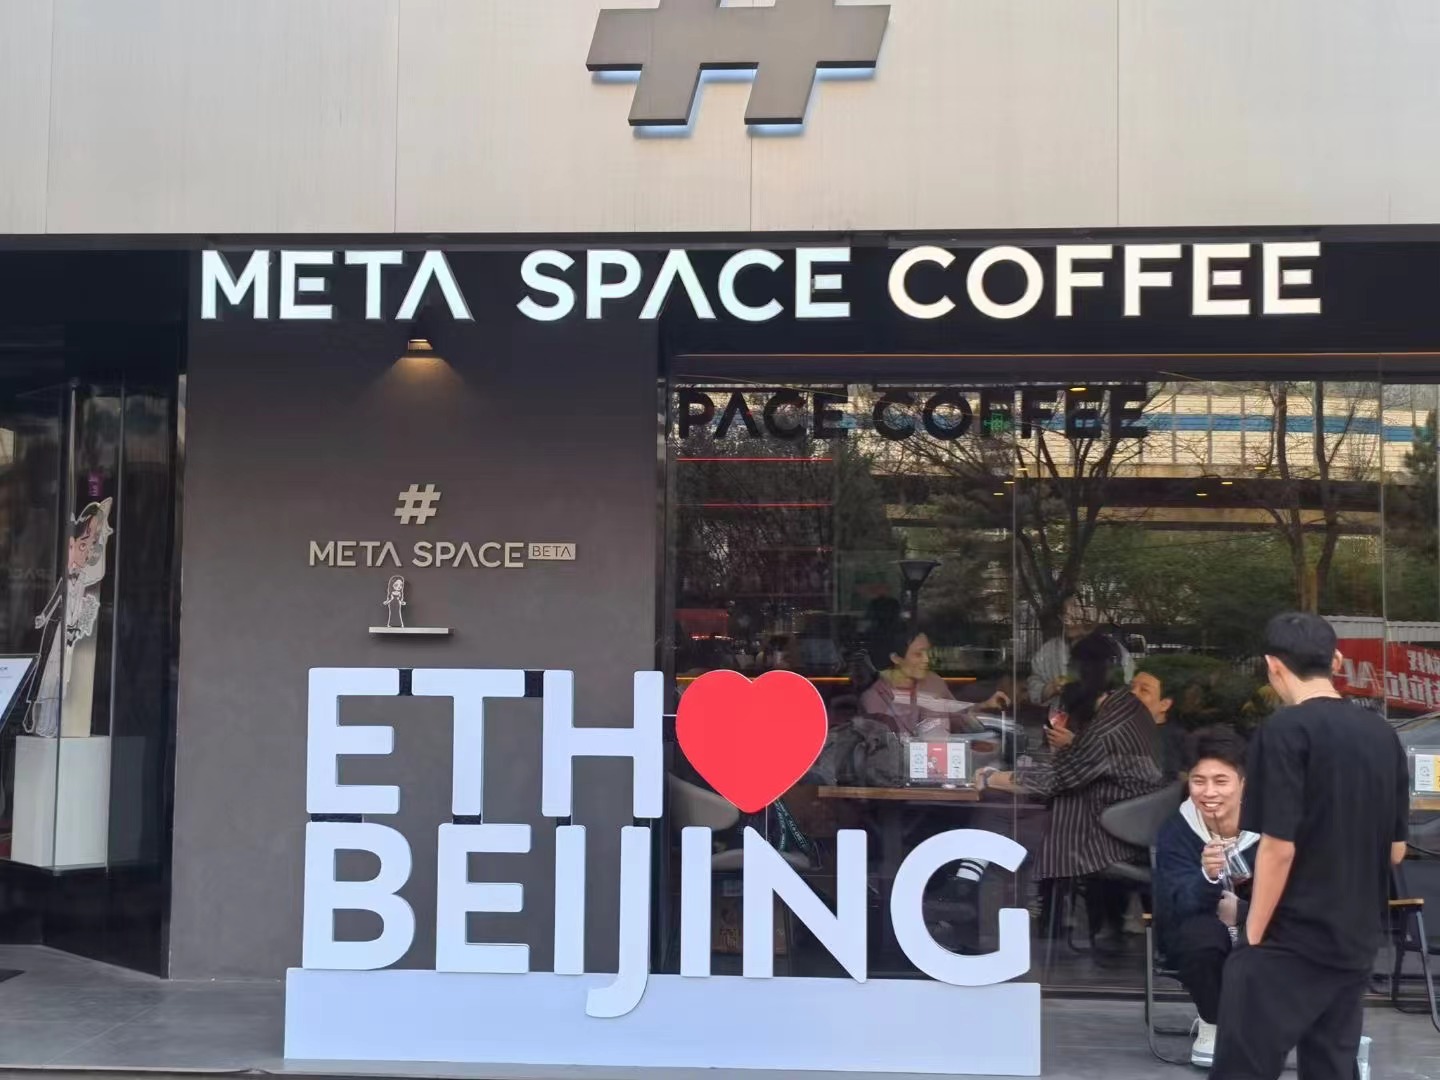 ETH Beijing Hackathon